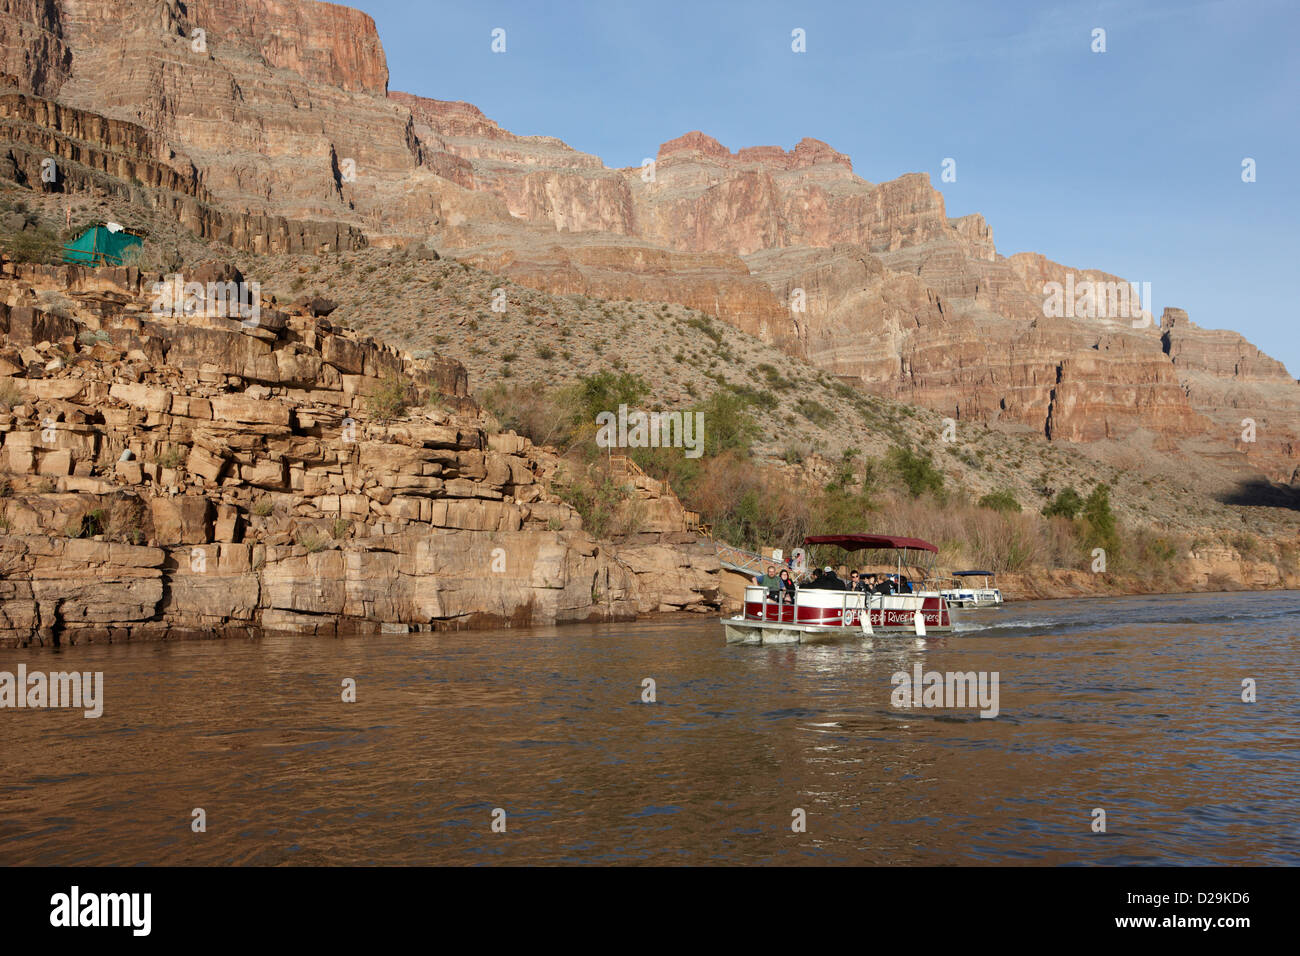 Nazione hualapai river gite sul fiume Colorado fondo del Grand Canyon Arizona USA Foto Stock